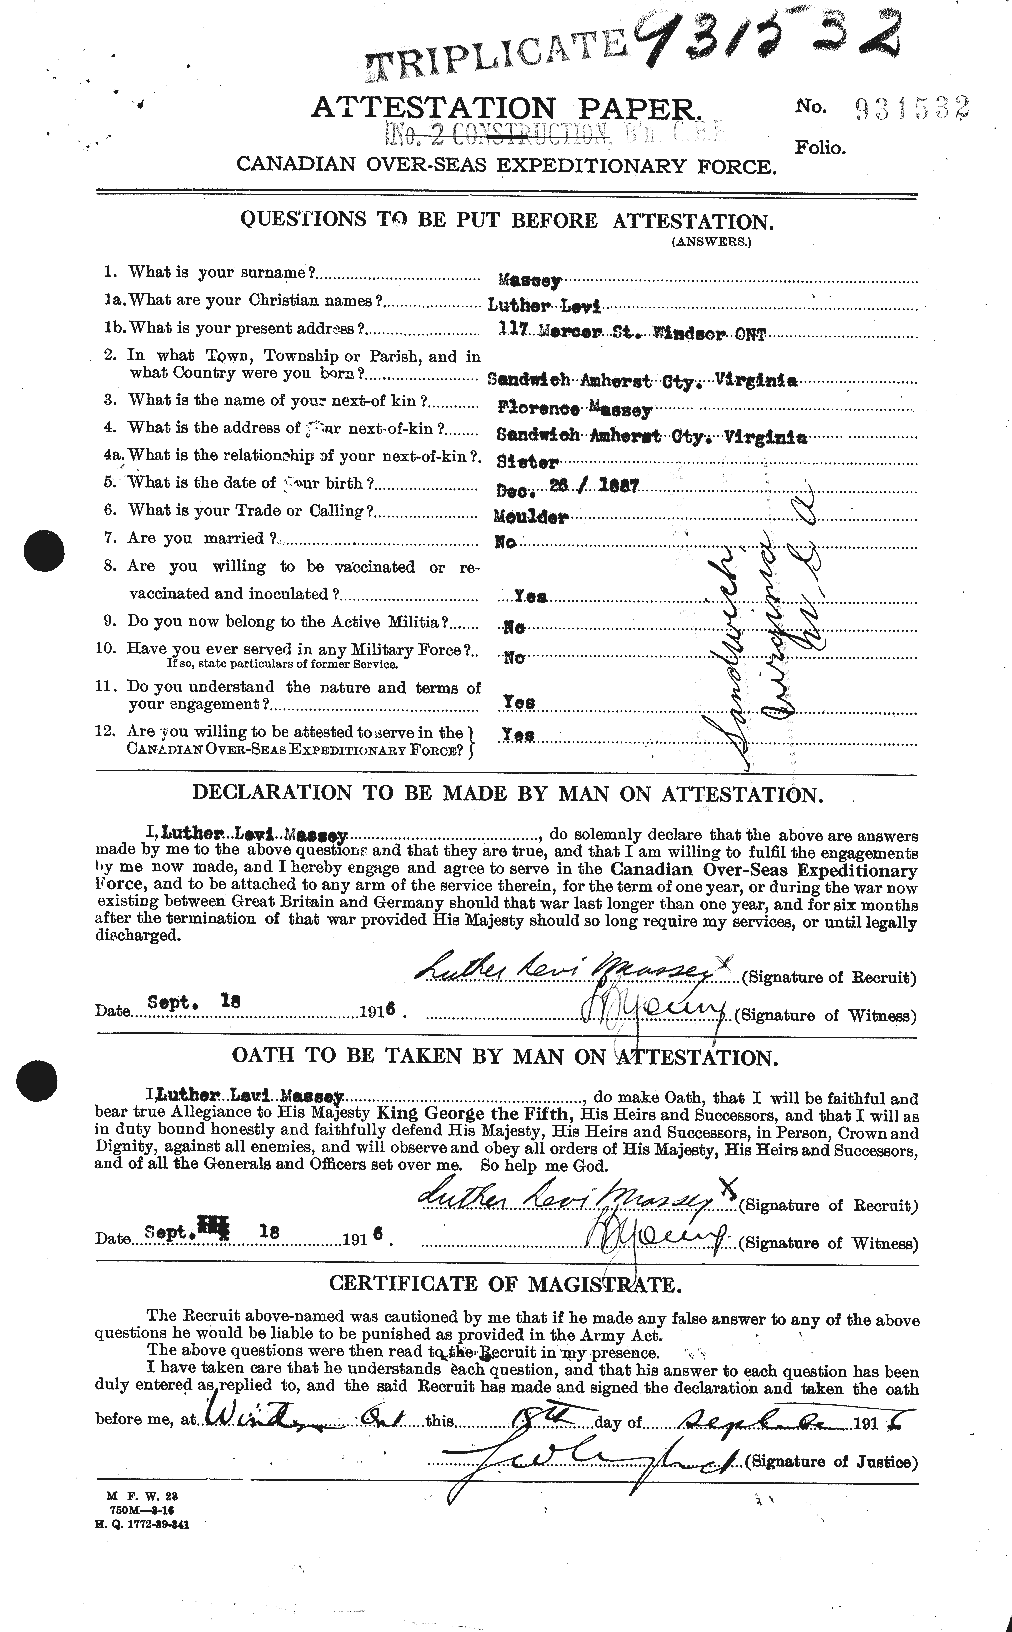 Dossiers du Personnel de la Première Guerre mondiale - CEC 487087a